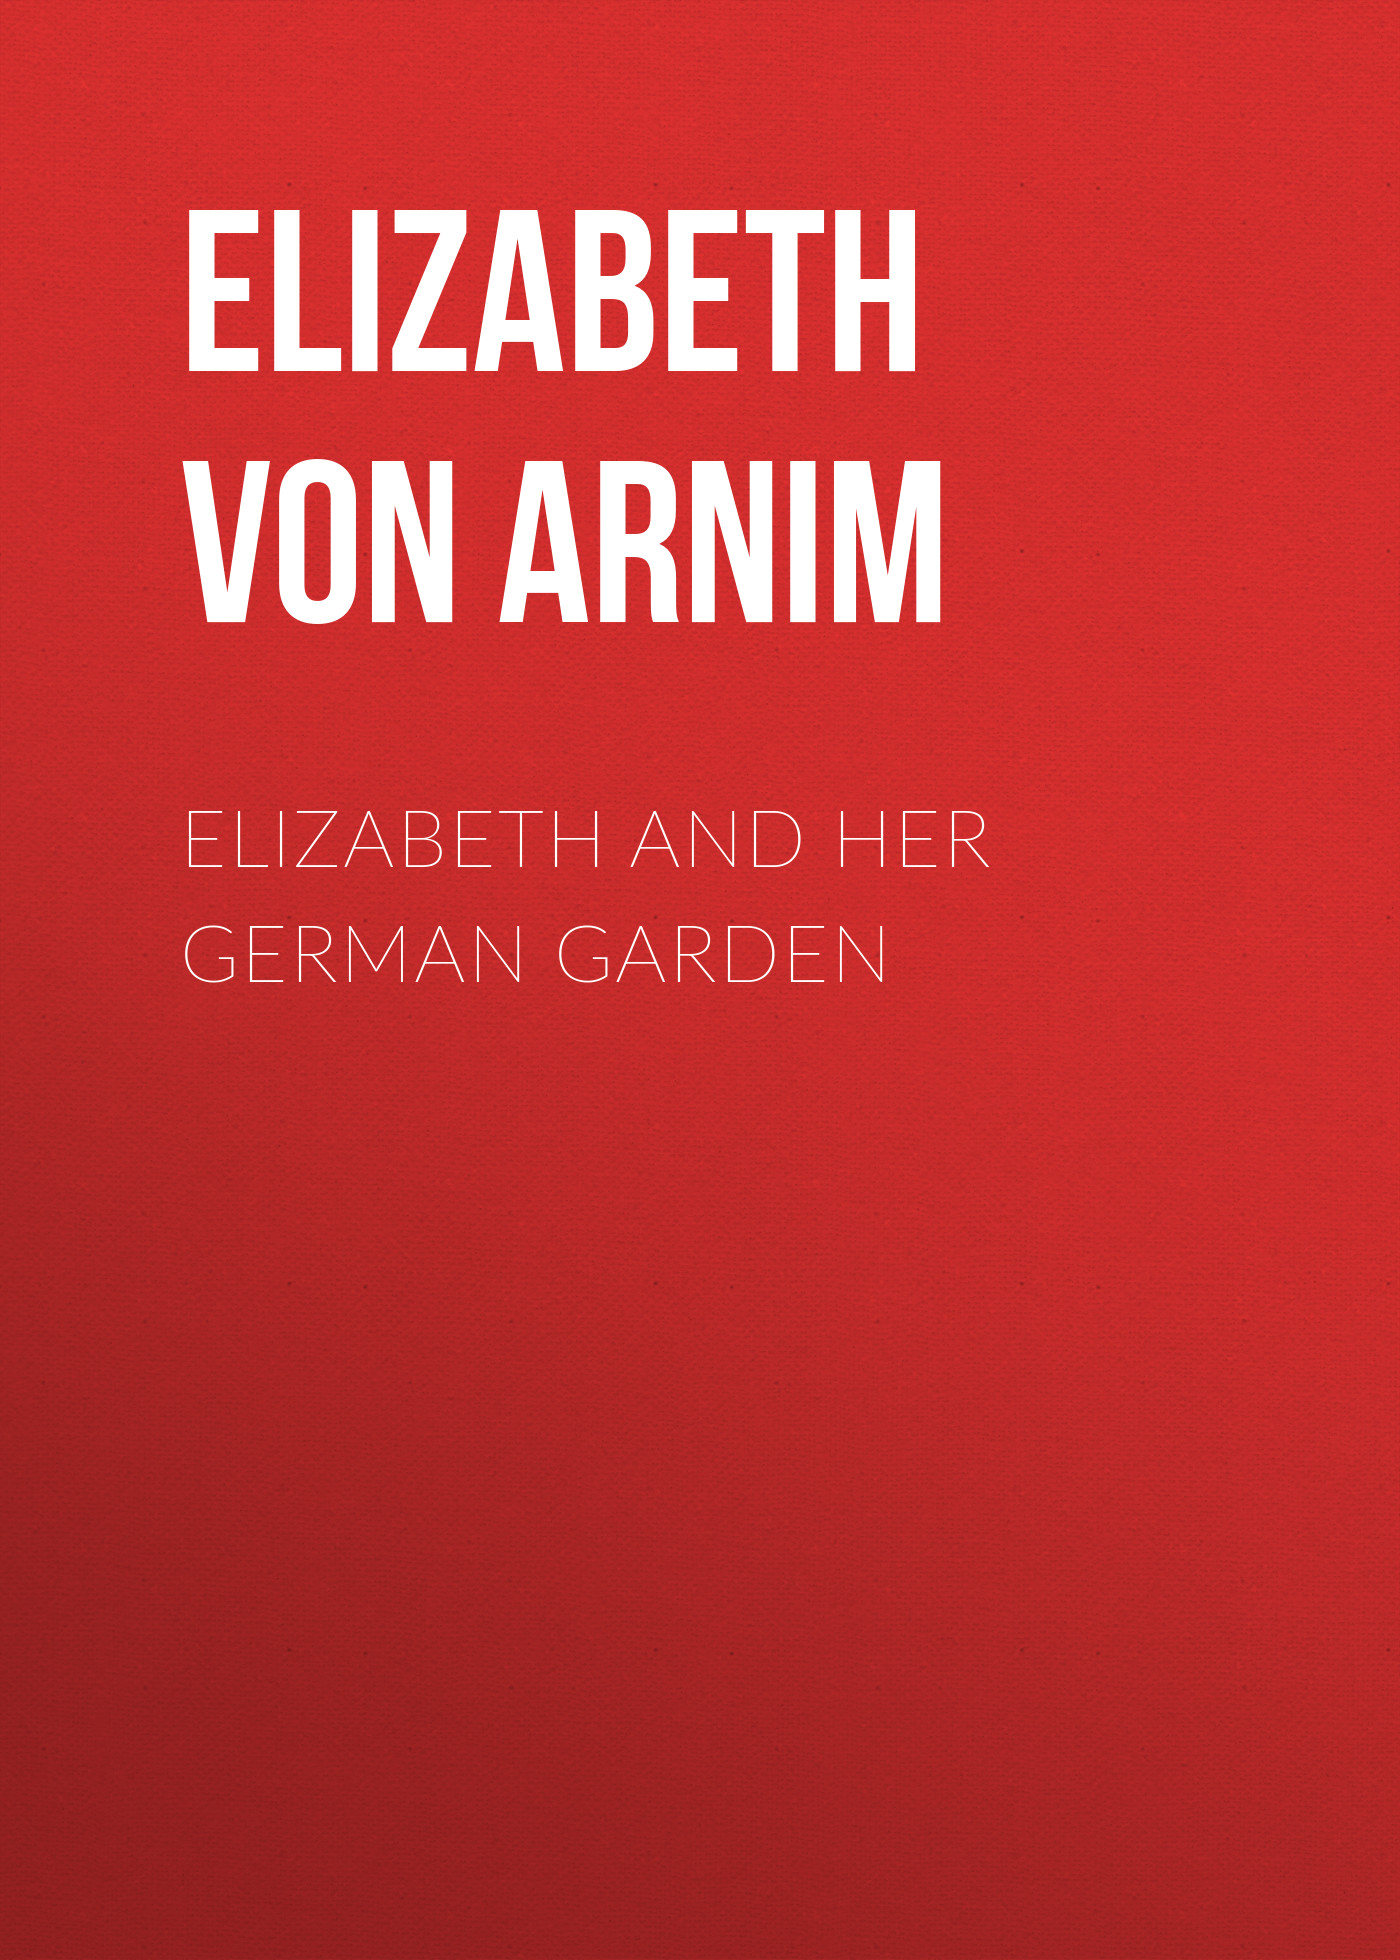 Книга Elizabeth and Her German Garden из серии , созданная Elizabeth von Arnim, может относится к жанру Зарубежная классика, Зарубежная старинная литература. Стоимость электронной книги Elizabeth and Her German Garden с идентификатором 36321404 составляет 0 руб.